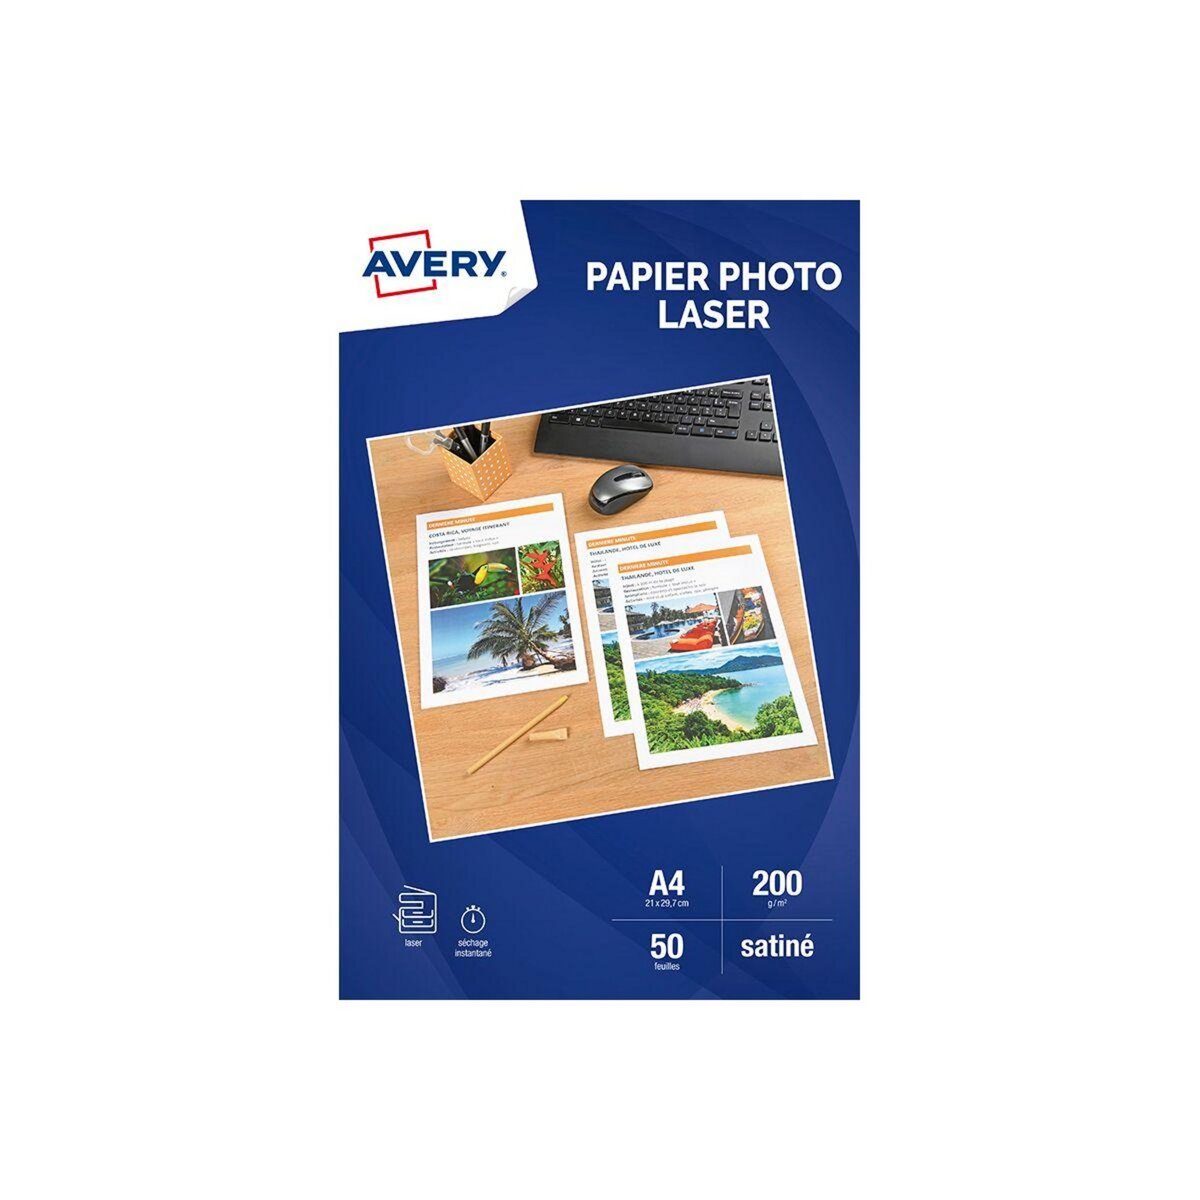 AVERY Papier photo 50 Feuilles papier photo brillant laser